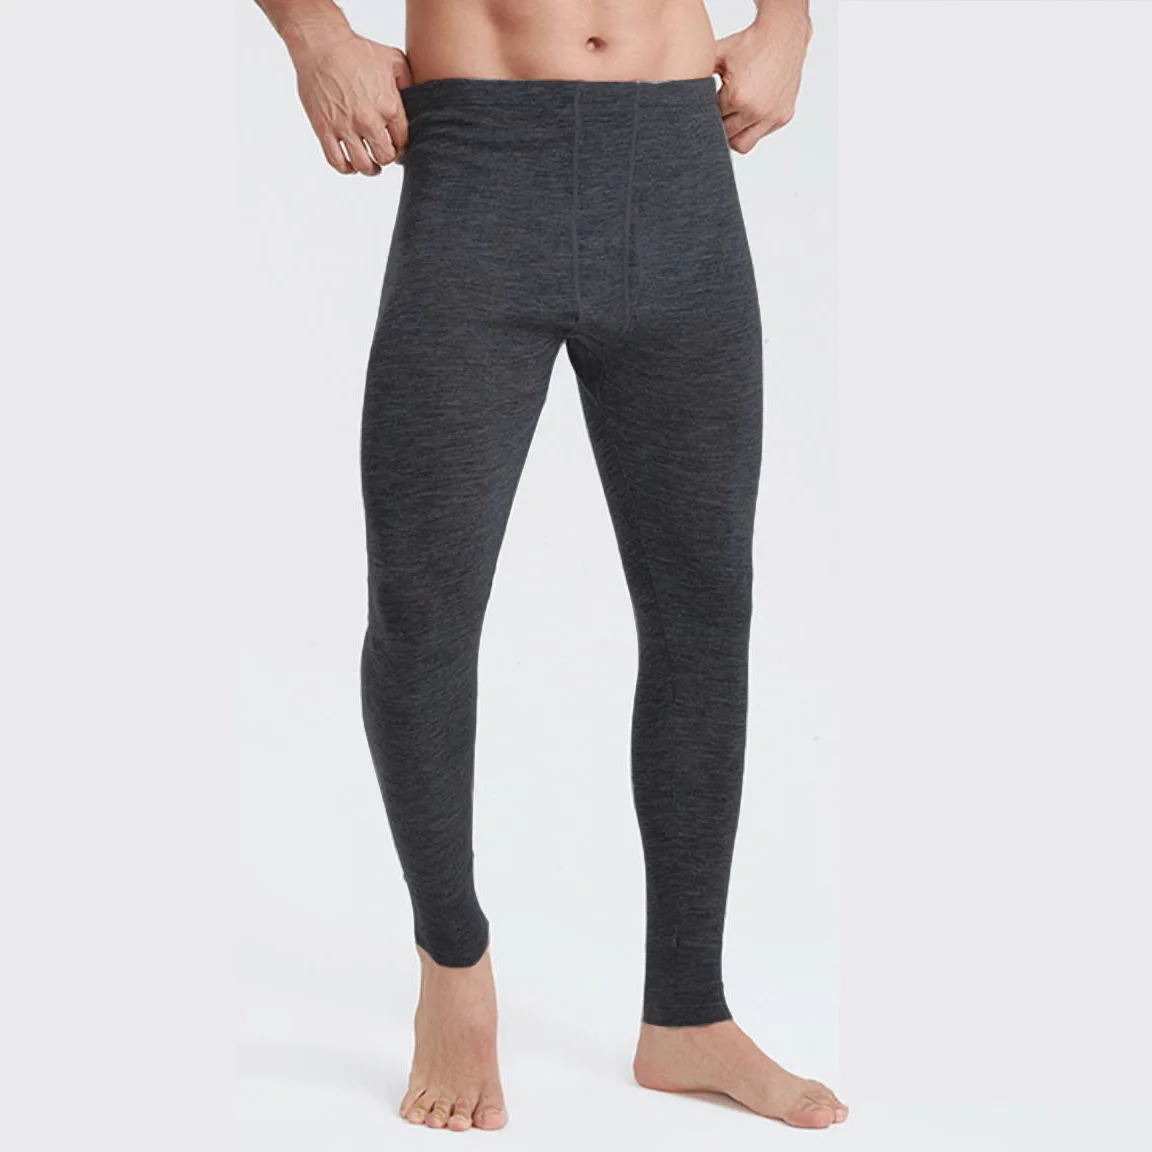 100% Merino Wool Long Johns thermal Underwear Pants Men's Baselayer Man Merino Wool Bottom Thermal Warm